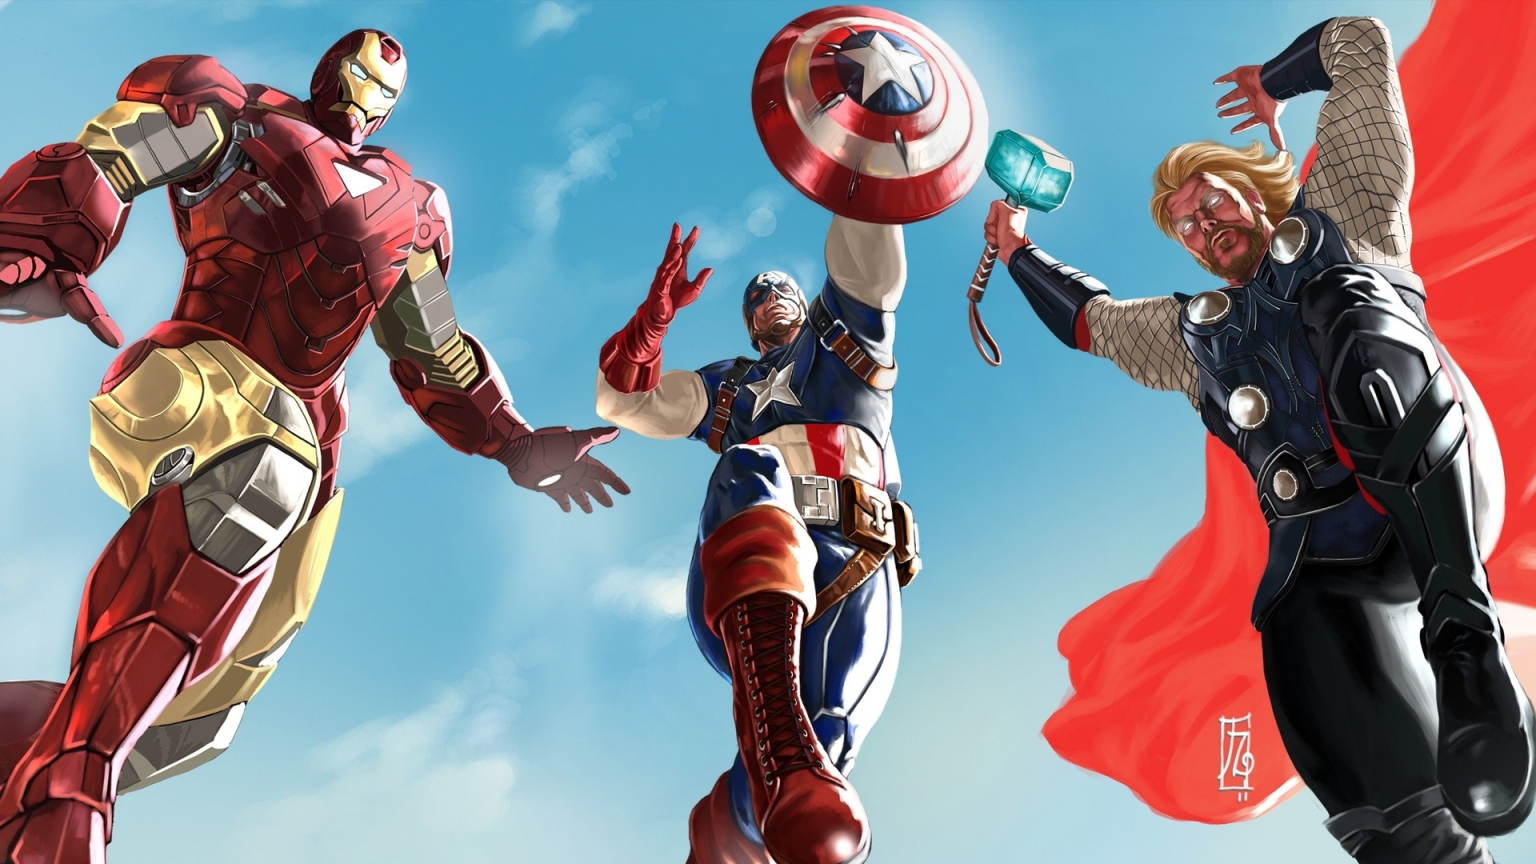 The Avengers 2012 for 1536 x 864 HDTV resolution